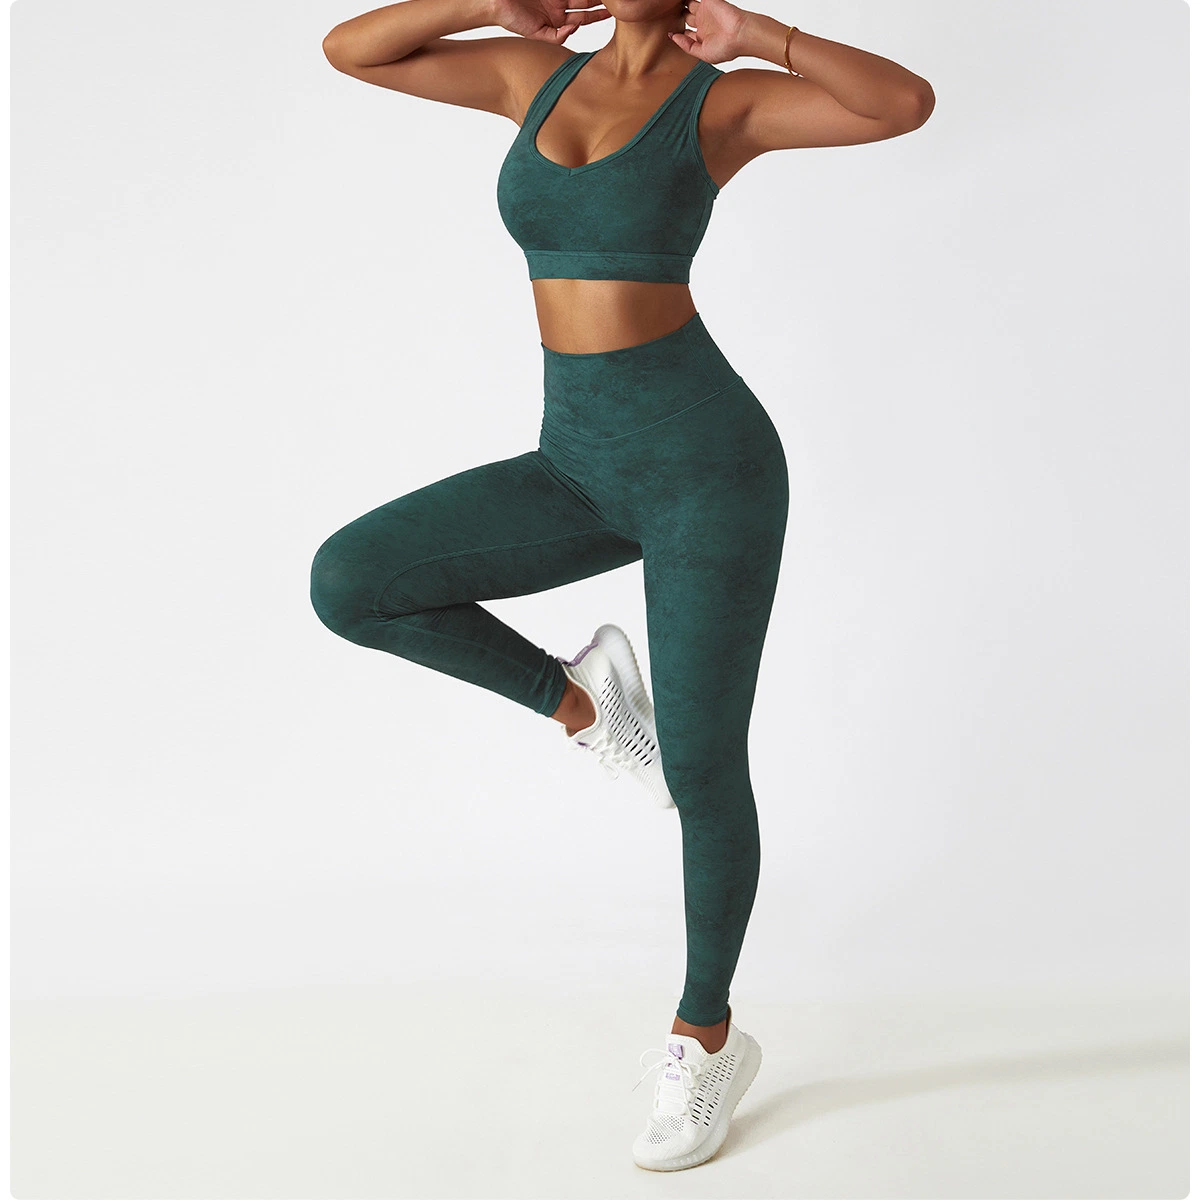 Frauen Yoga Hosen Gym Training Kleidung Push-up Leggings Elastische Hose Mit Hohem Bund Und Tie Dye Leggings Set Bekleidung